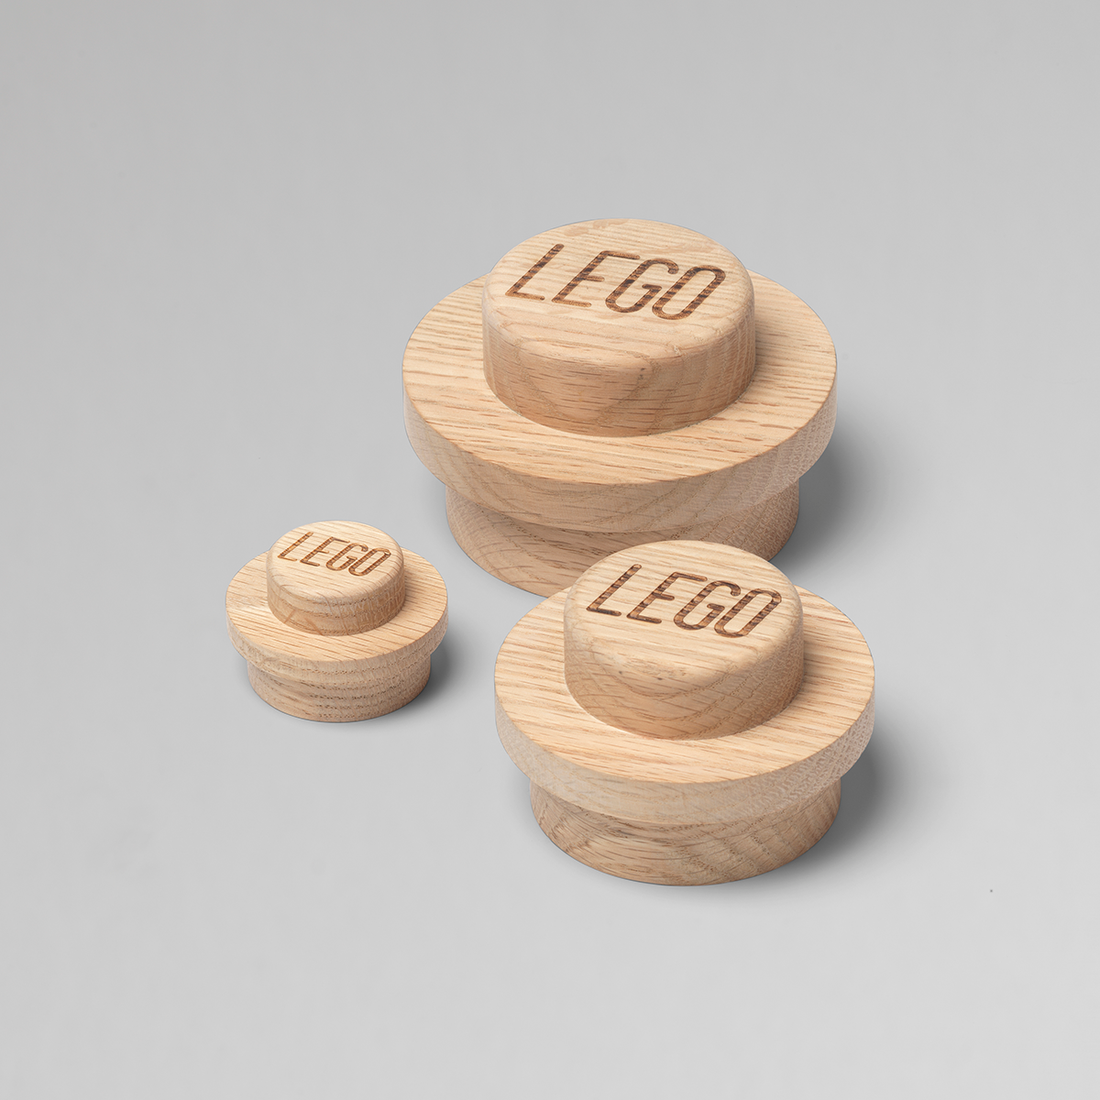 Colgadores pared Lego® - Colección Deluxe de madera - Set de 3